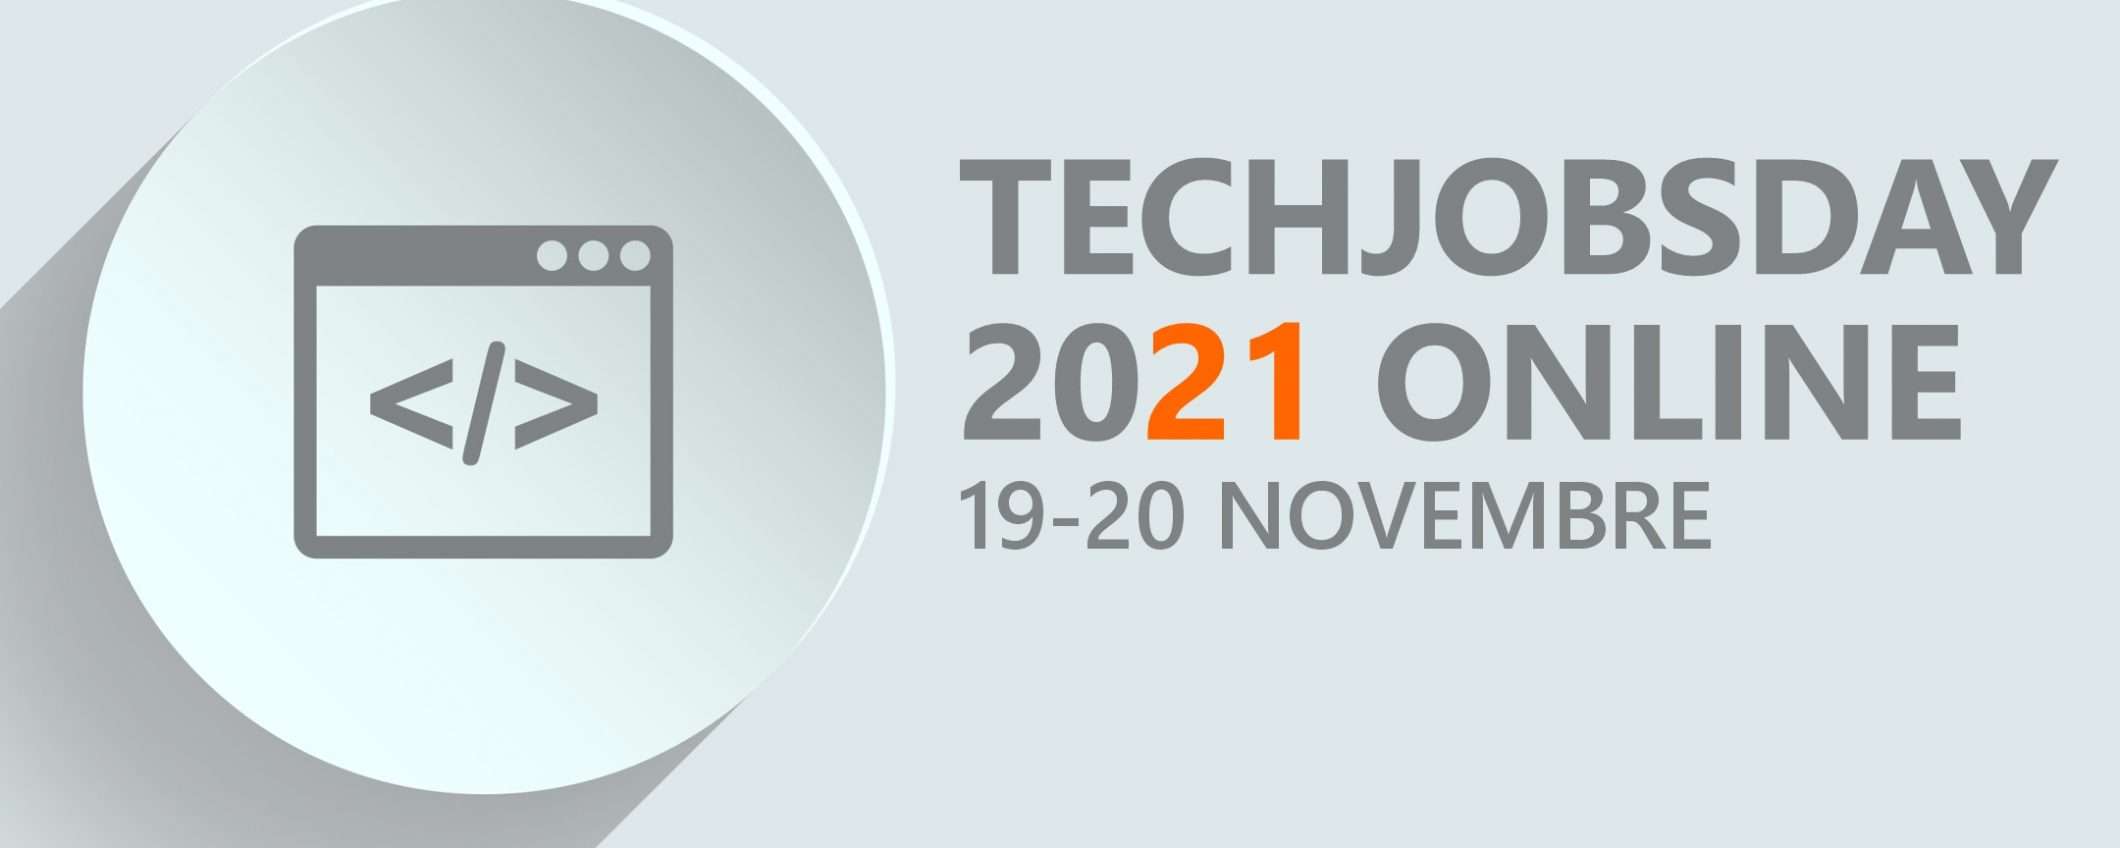 TechJobsDay 2021: il tuo futuro lavoro dal 19-20 novembre